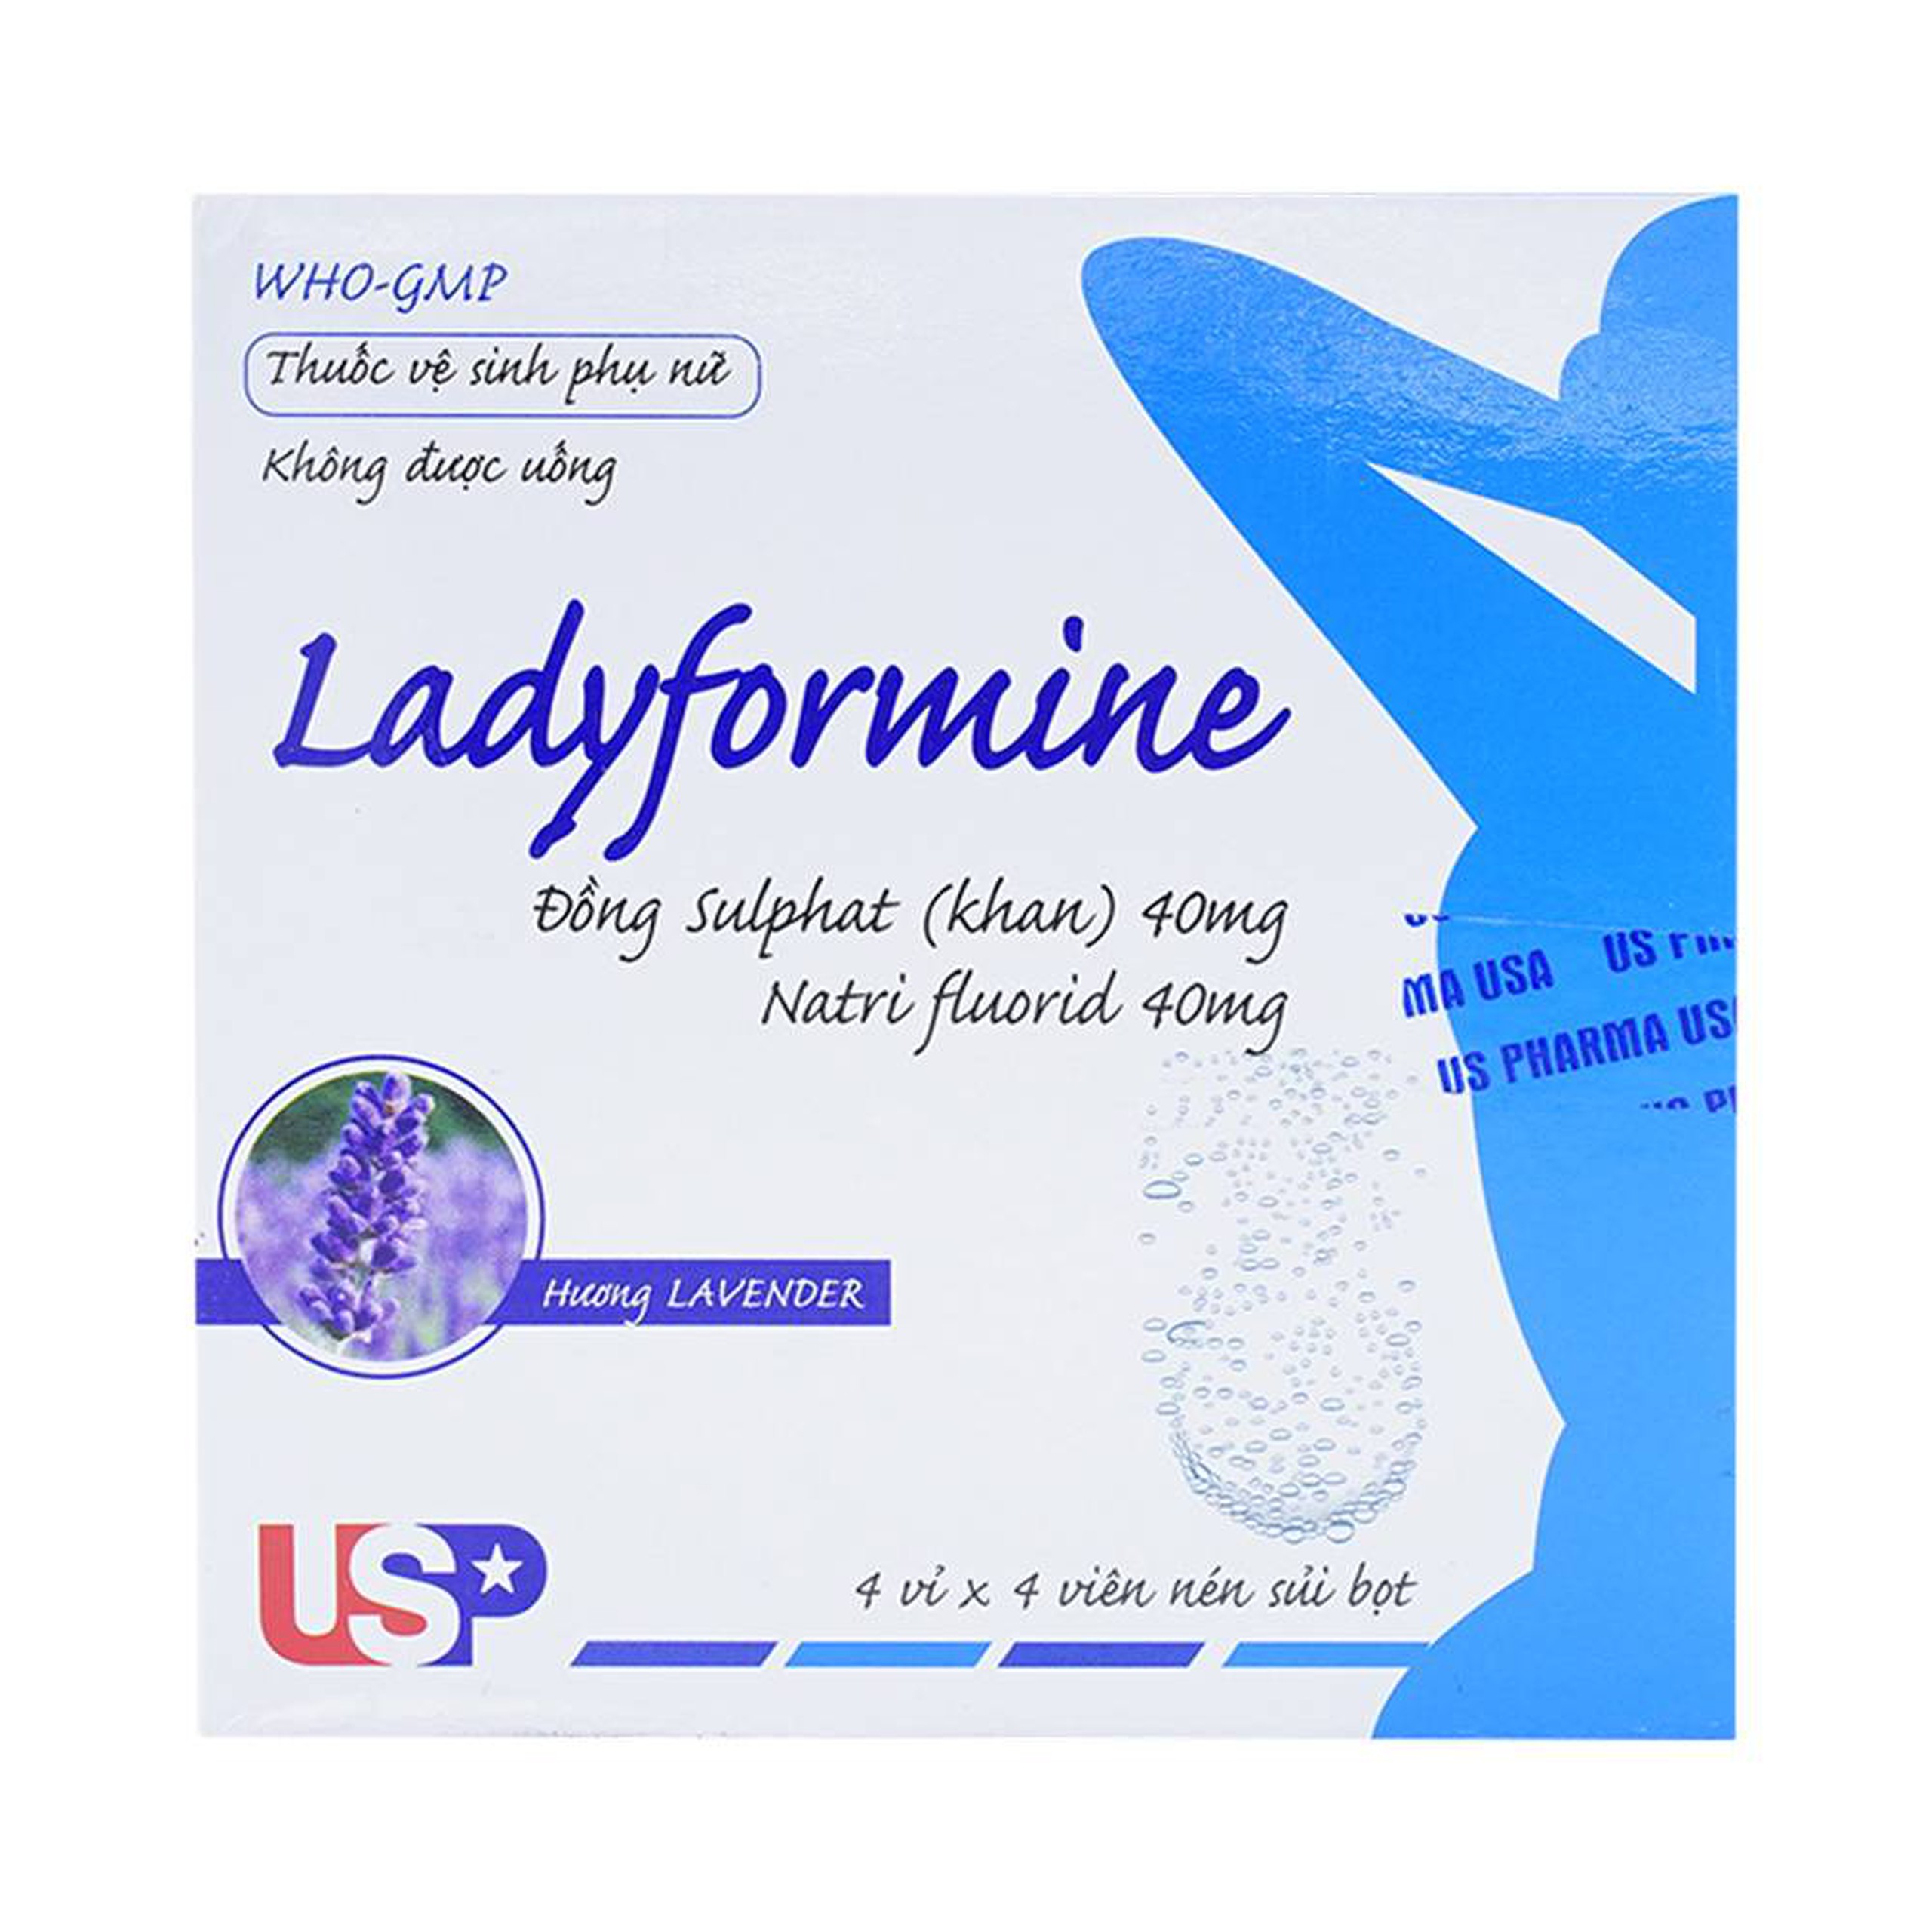 Thuốc vệ sinh phụ nữ Ladyformine USP vệ sinh vùng kín sau sinh, hành kinh, khí hư, viêm ngứa (4 vỉ x 4 viên)